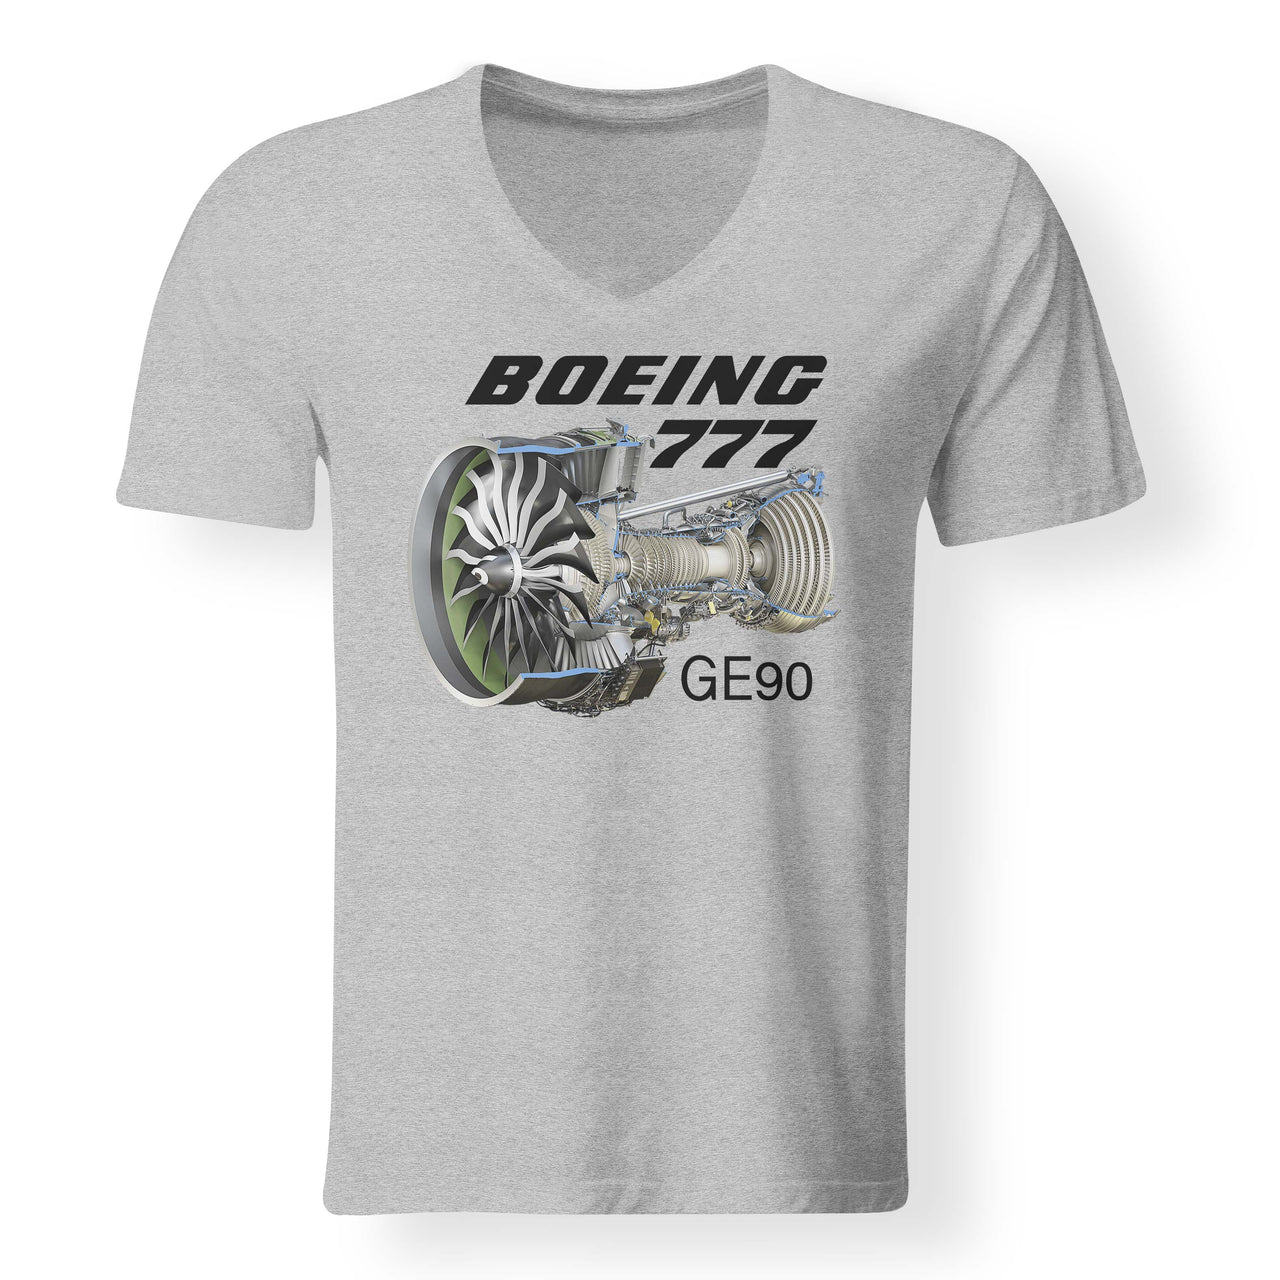 Boeing 777 & GE90 Engine Designed V-Neck T-Shirts